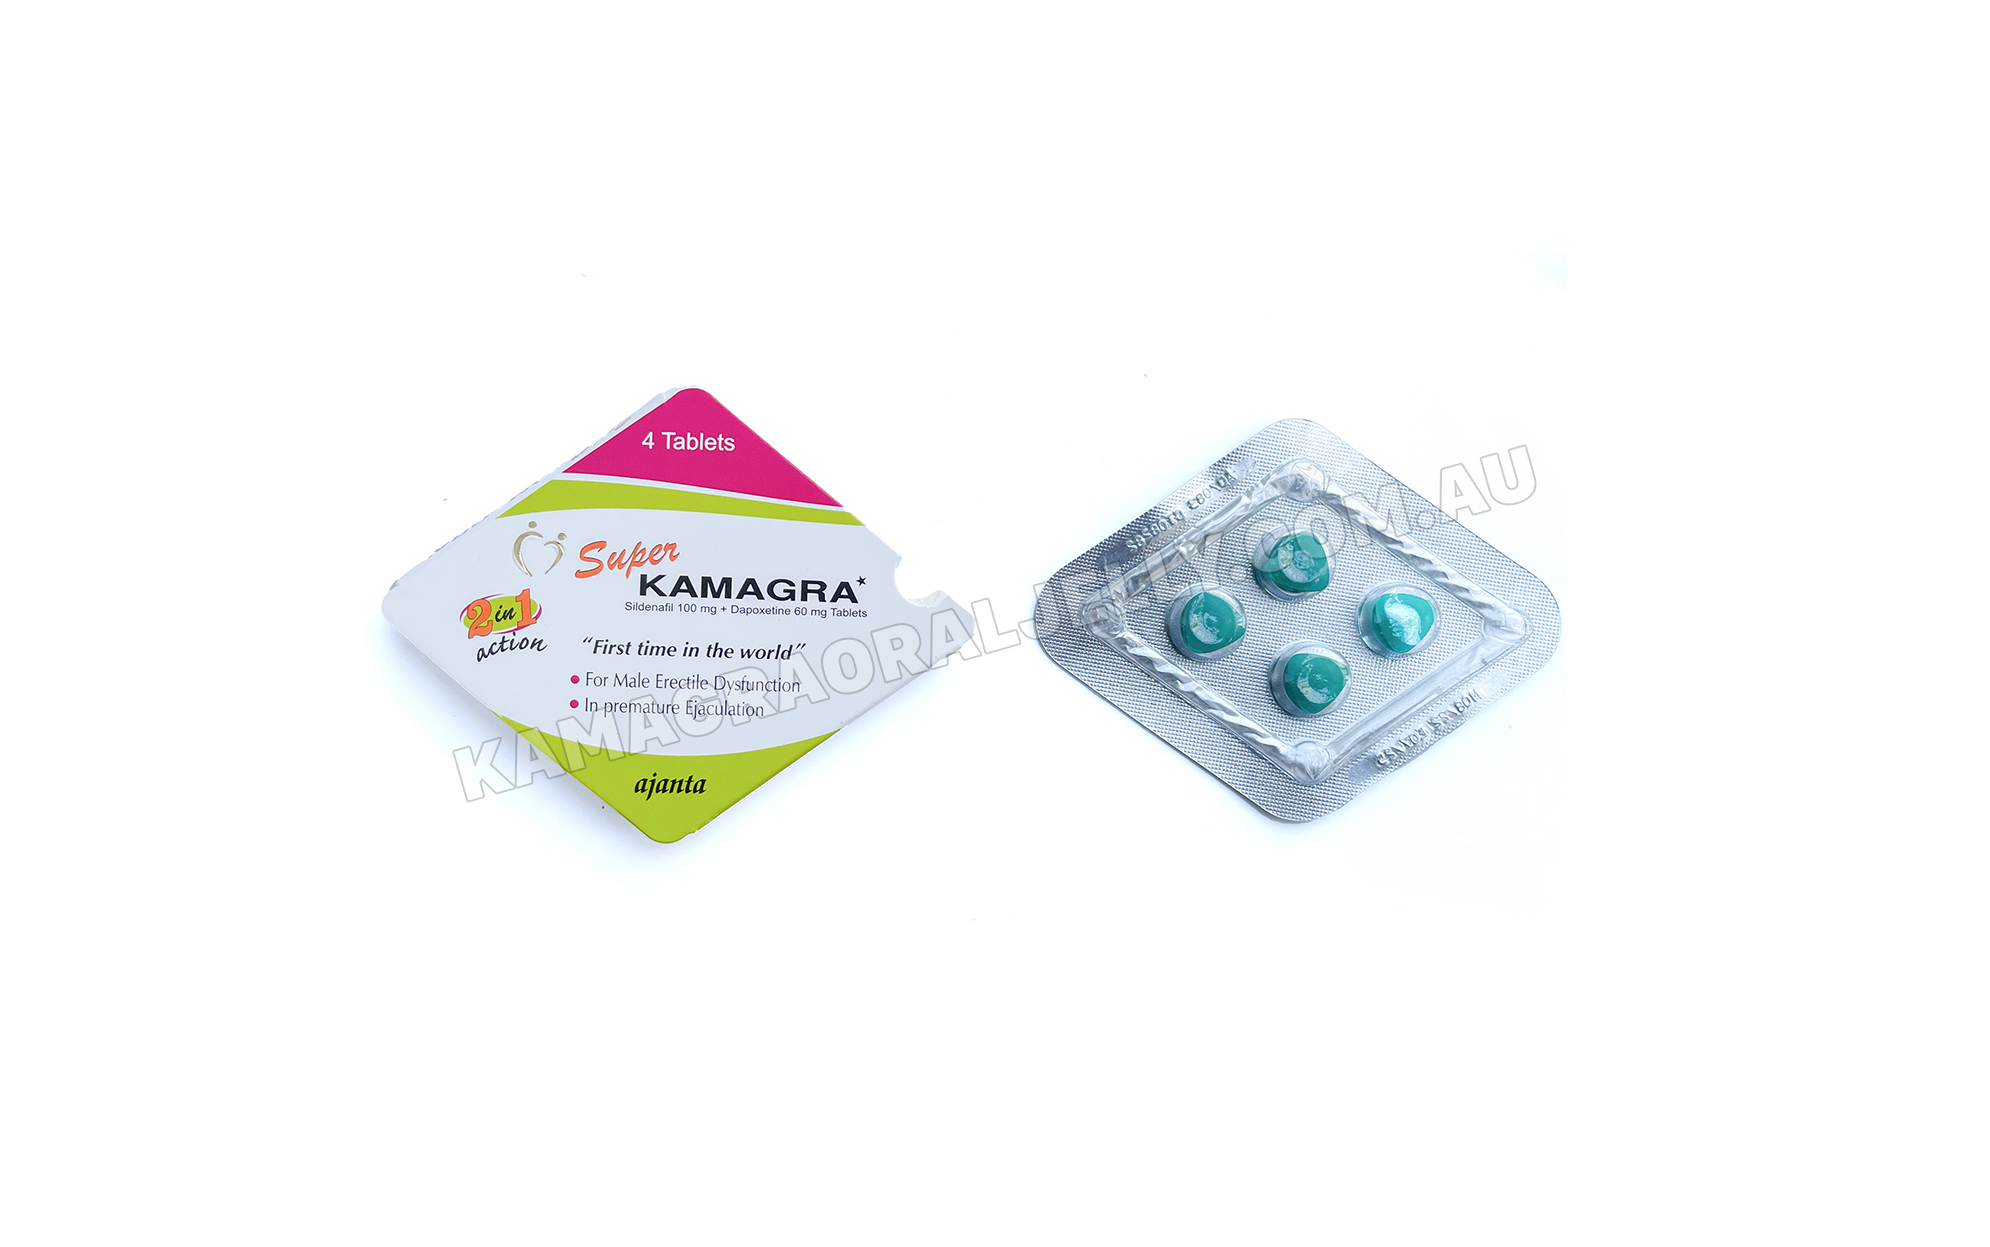 Why Choose Super Kamagra Tablets?